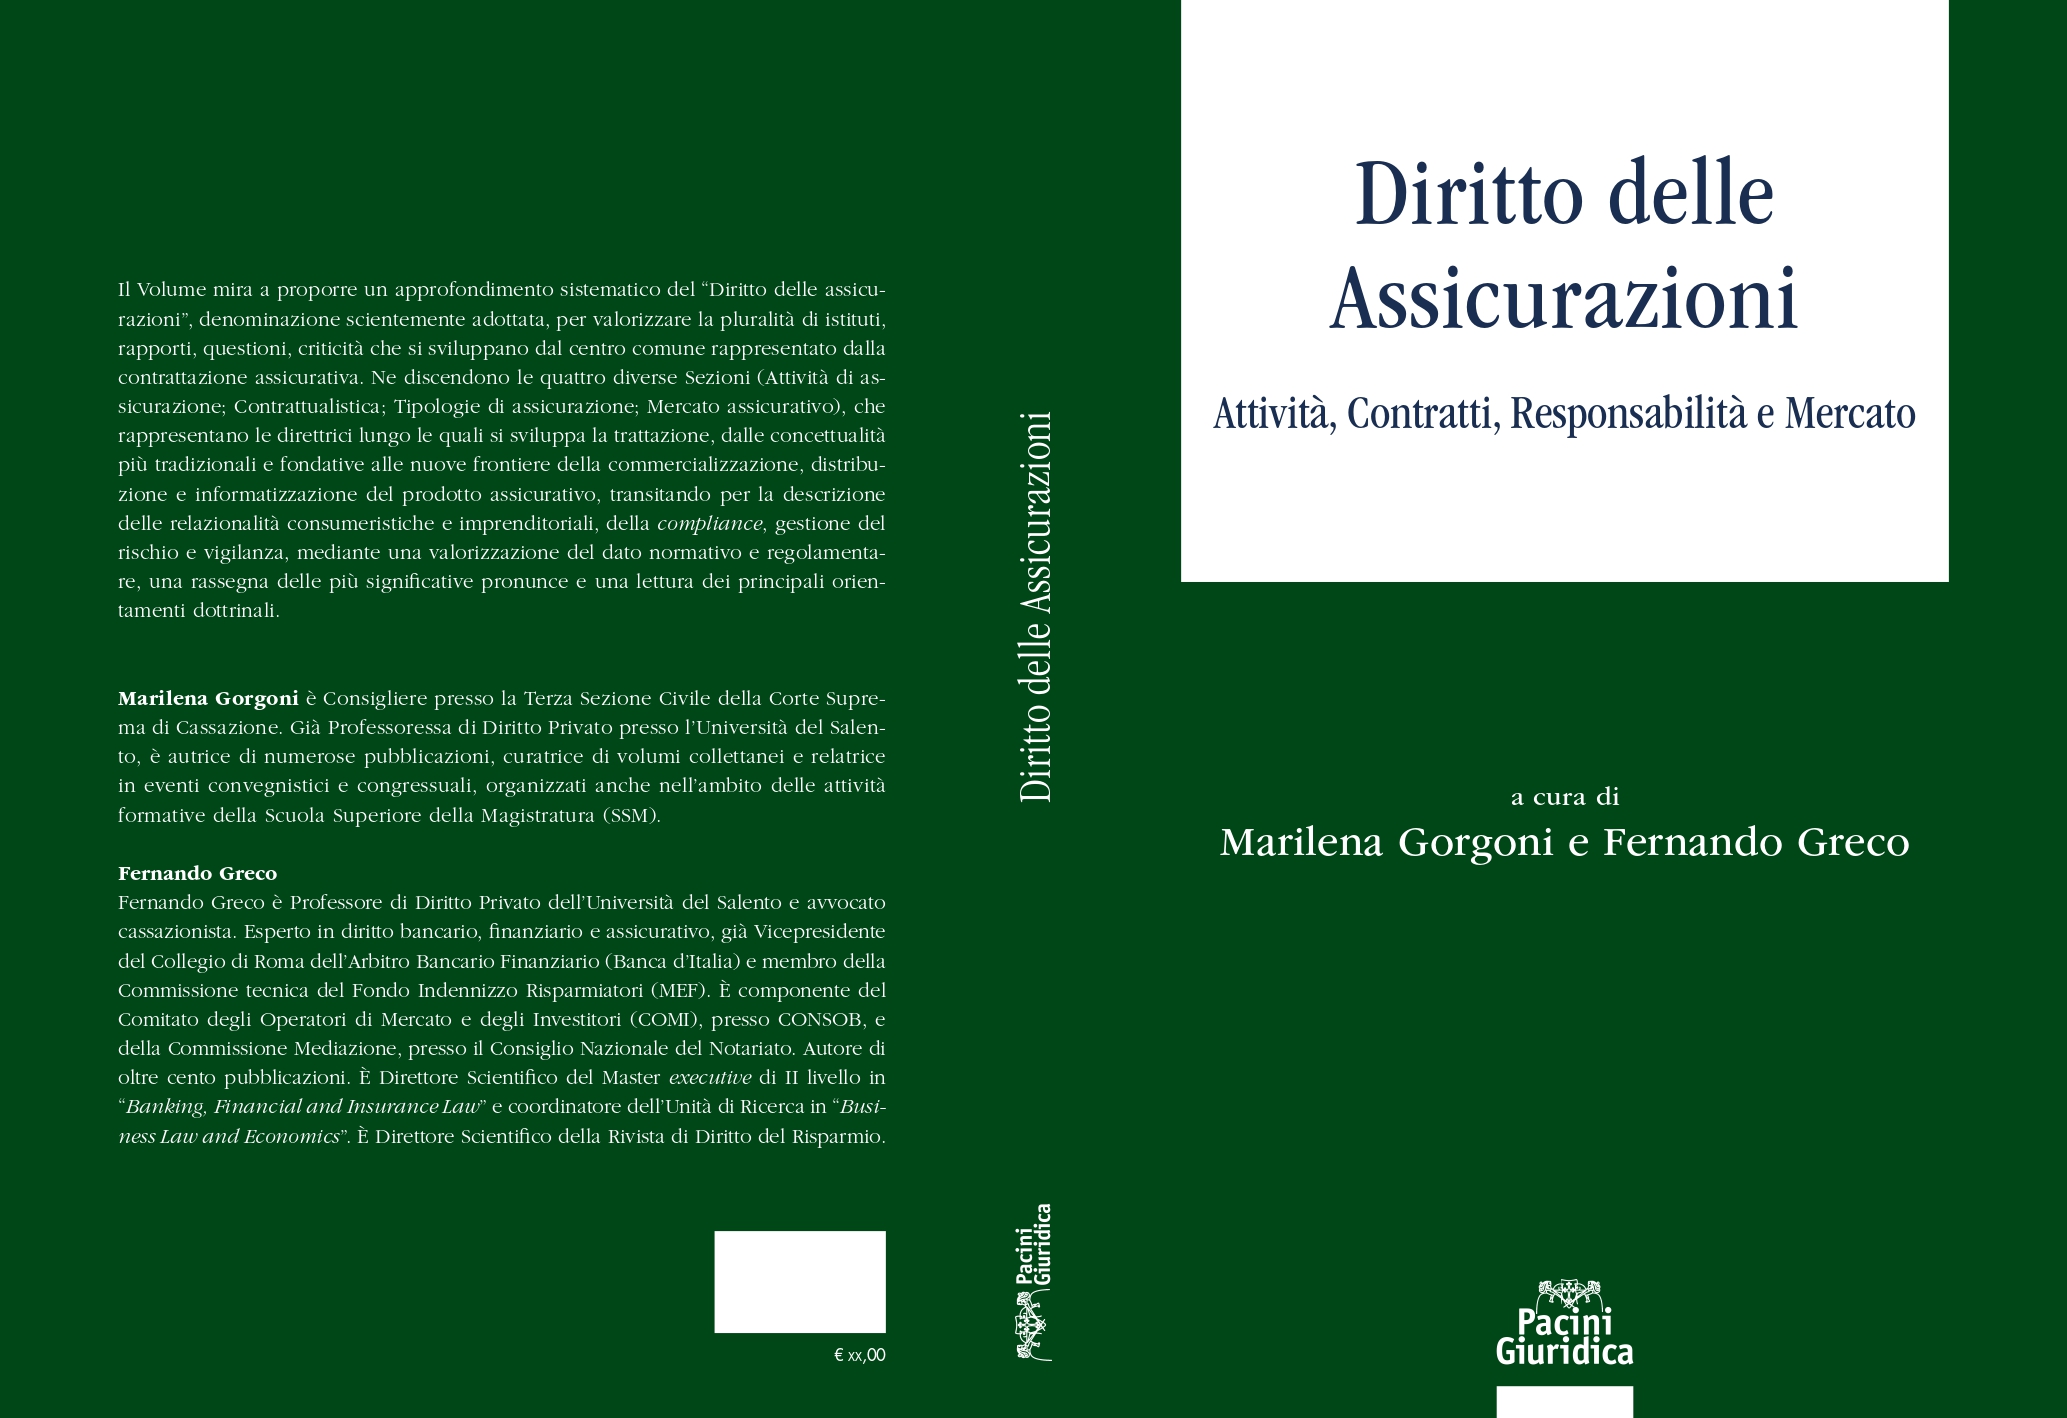 M. Gorgoni e F. Greco (a cura di) – Diritto delle Assicurazioni [Attività, Contratti, Responsabilità e Mercato]